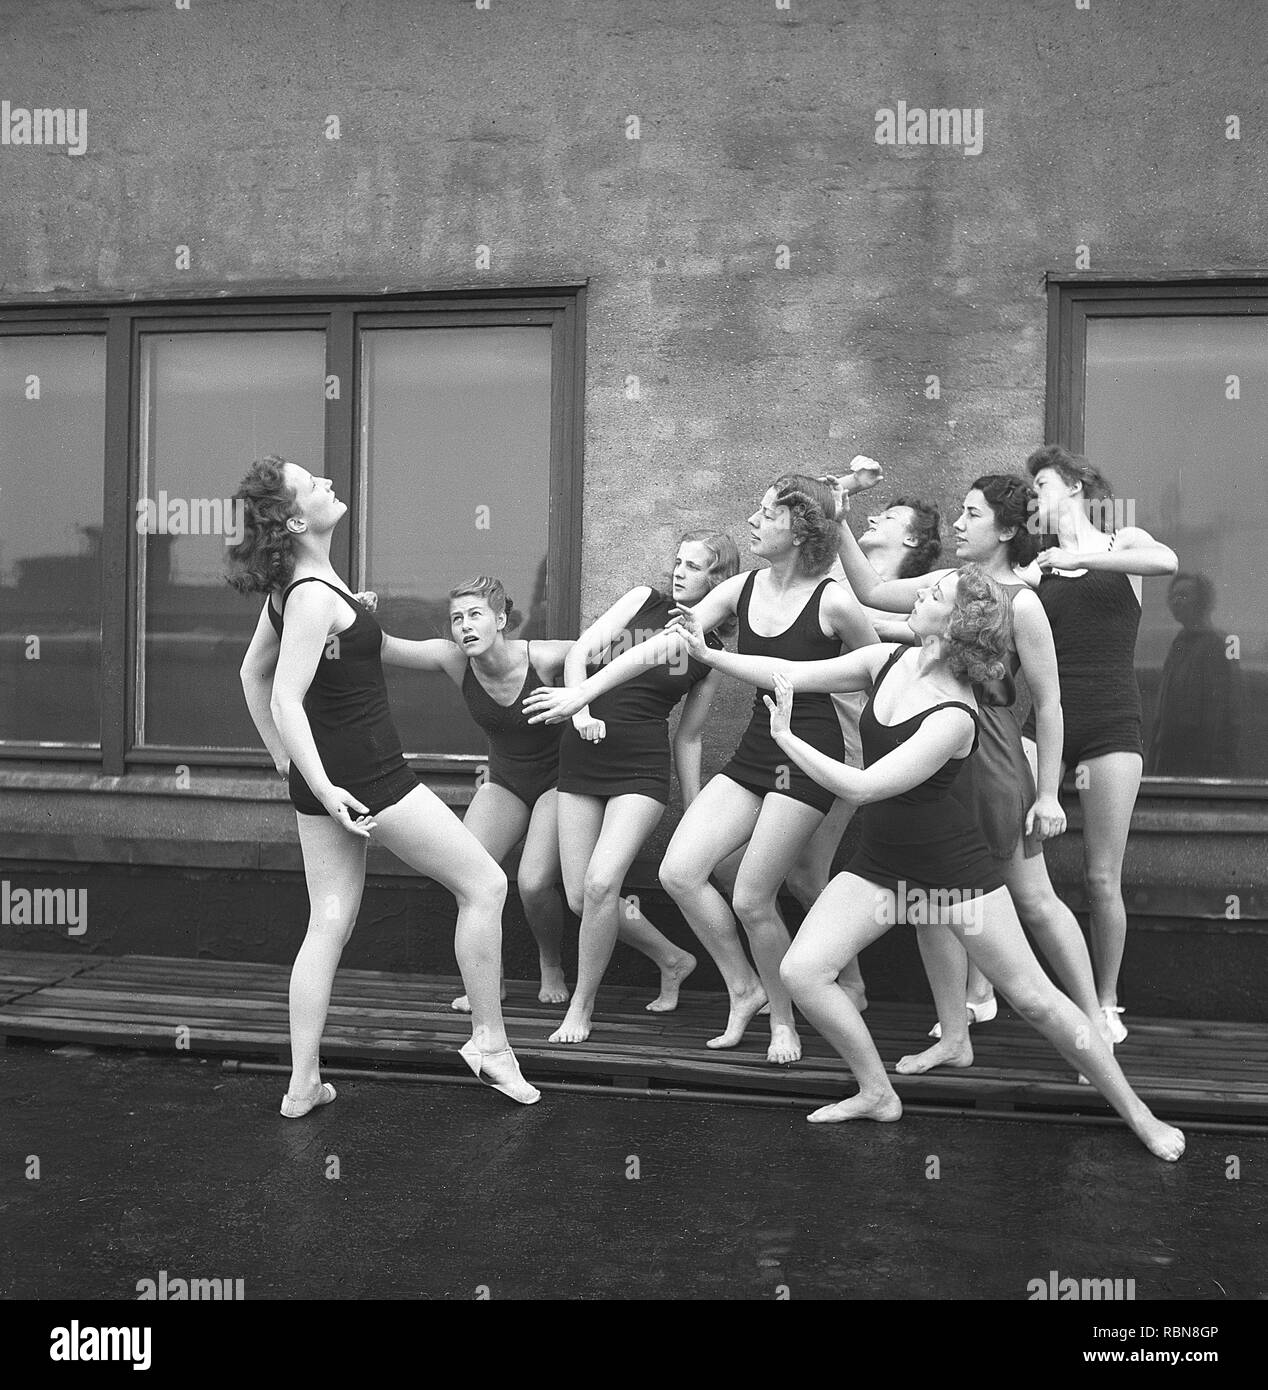 Turnerinnen in den 1940er Jahren. Eine Gruppe von Frauen, die Turnerinnen und Turner zusammen Training auf einem Gebäude sind. Schweden Foto Kristoffersson Ref O 7-1-6. Schweden 1945 Stockfoto